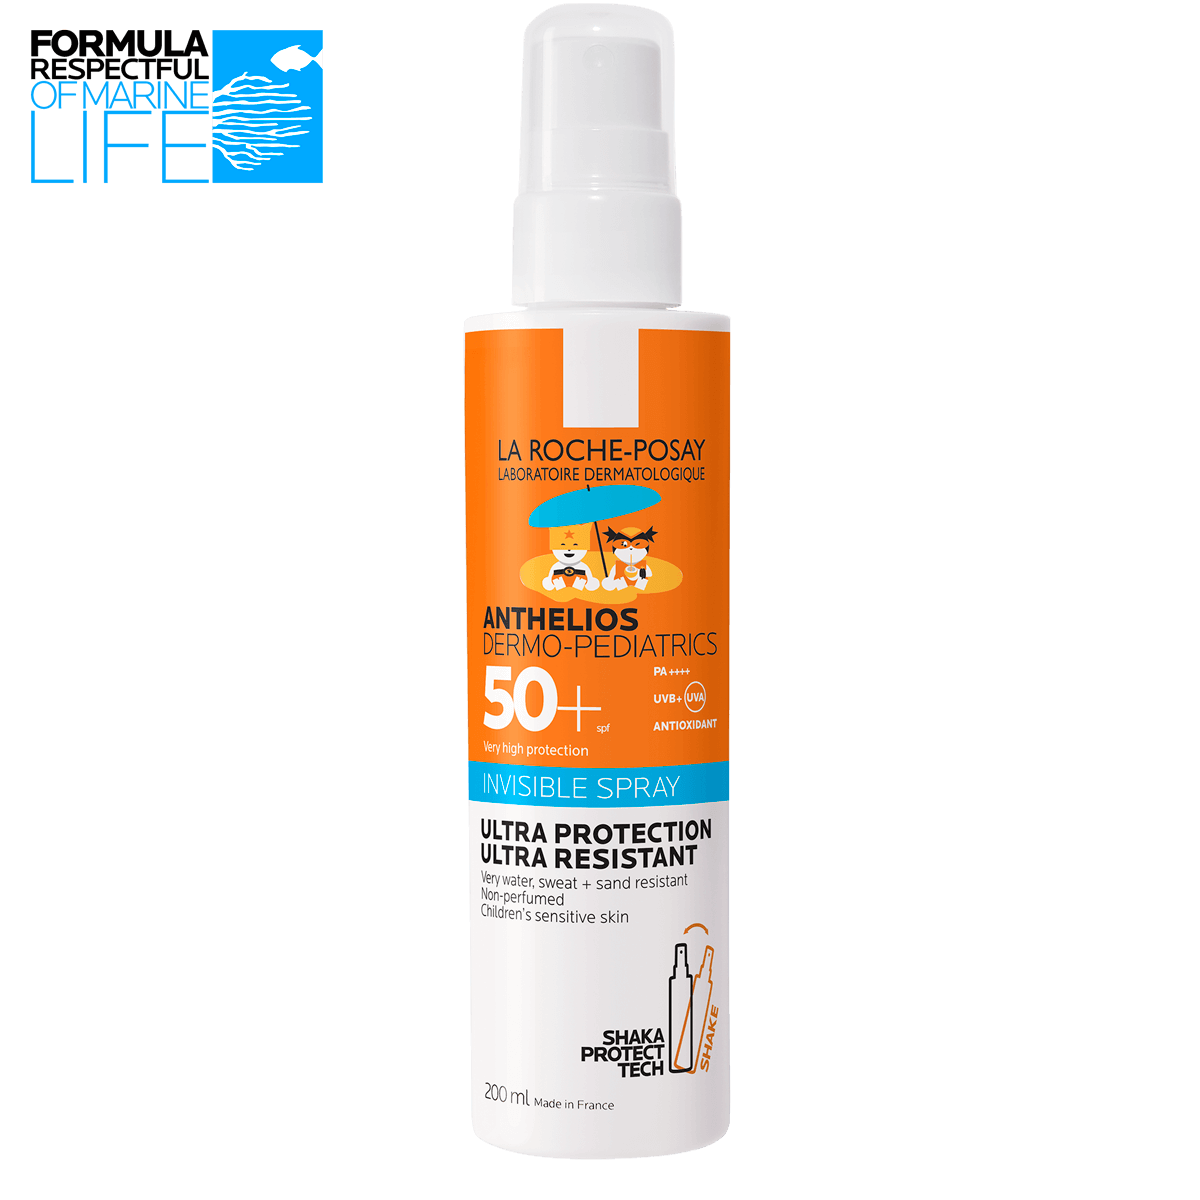 La Roche Posay ProductPage Sun Anthelios Dermo Pediatrics Spray Spf50 